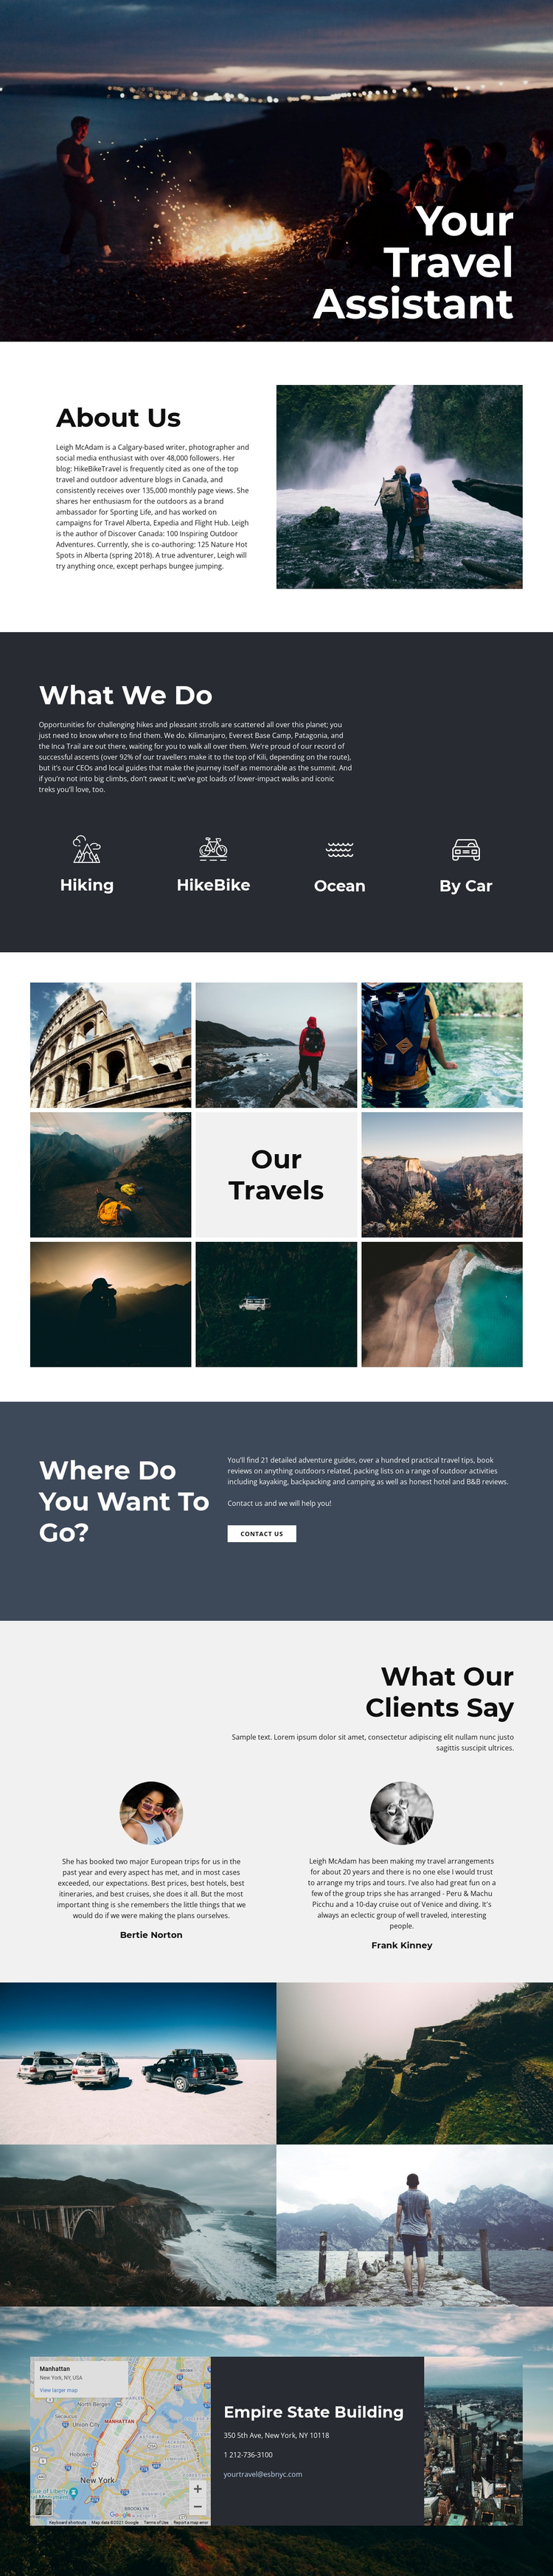 Travel Assistant Website Builder Software